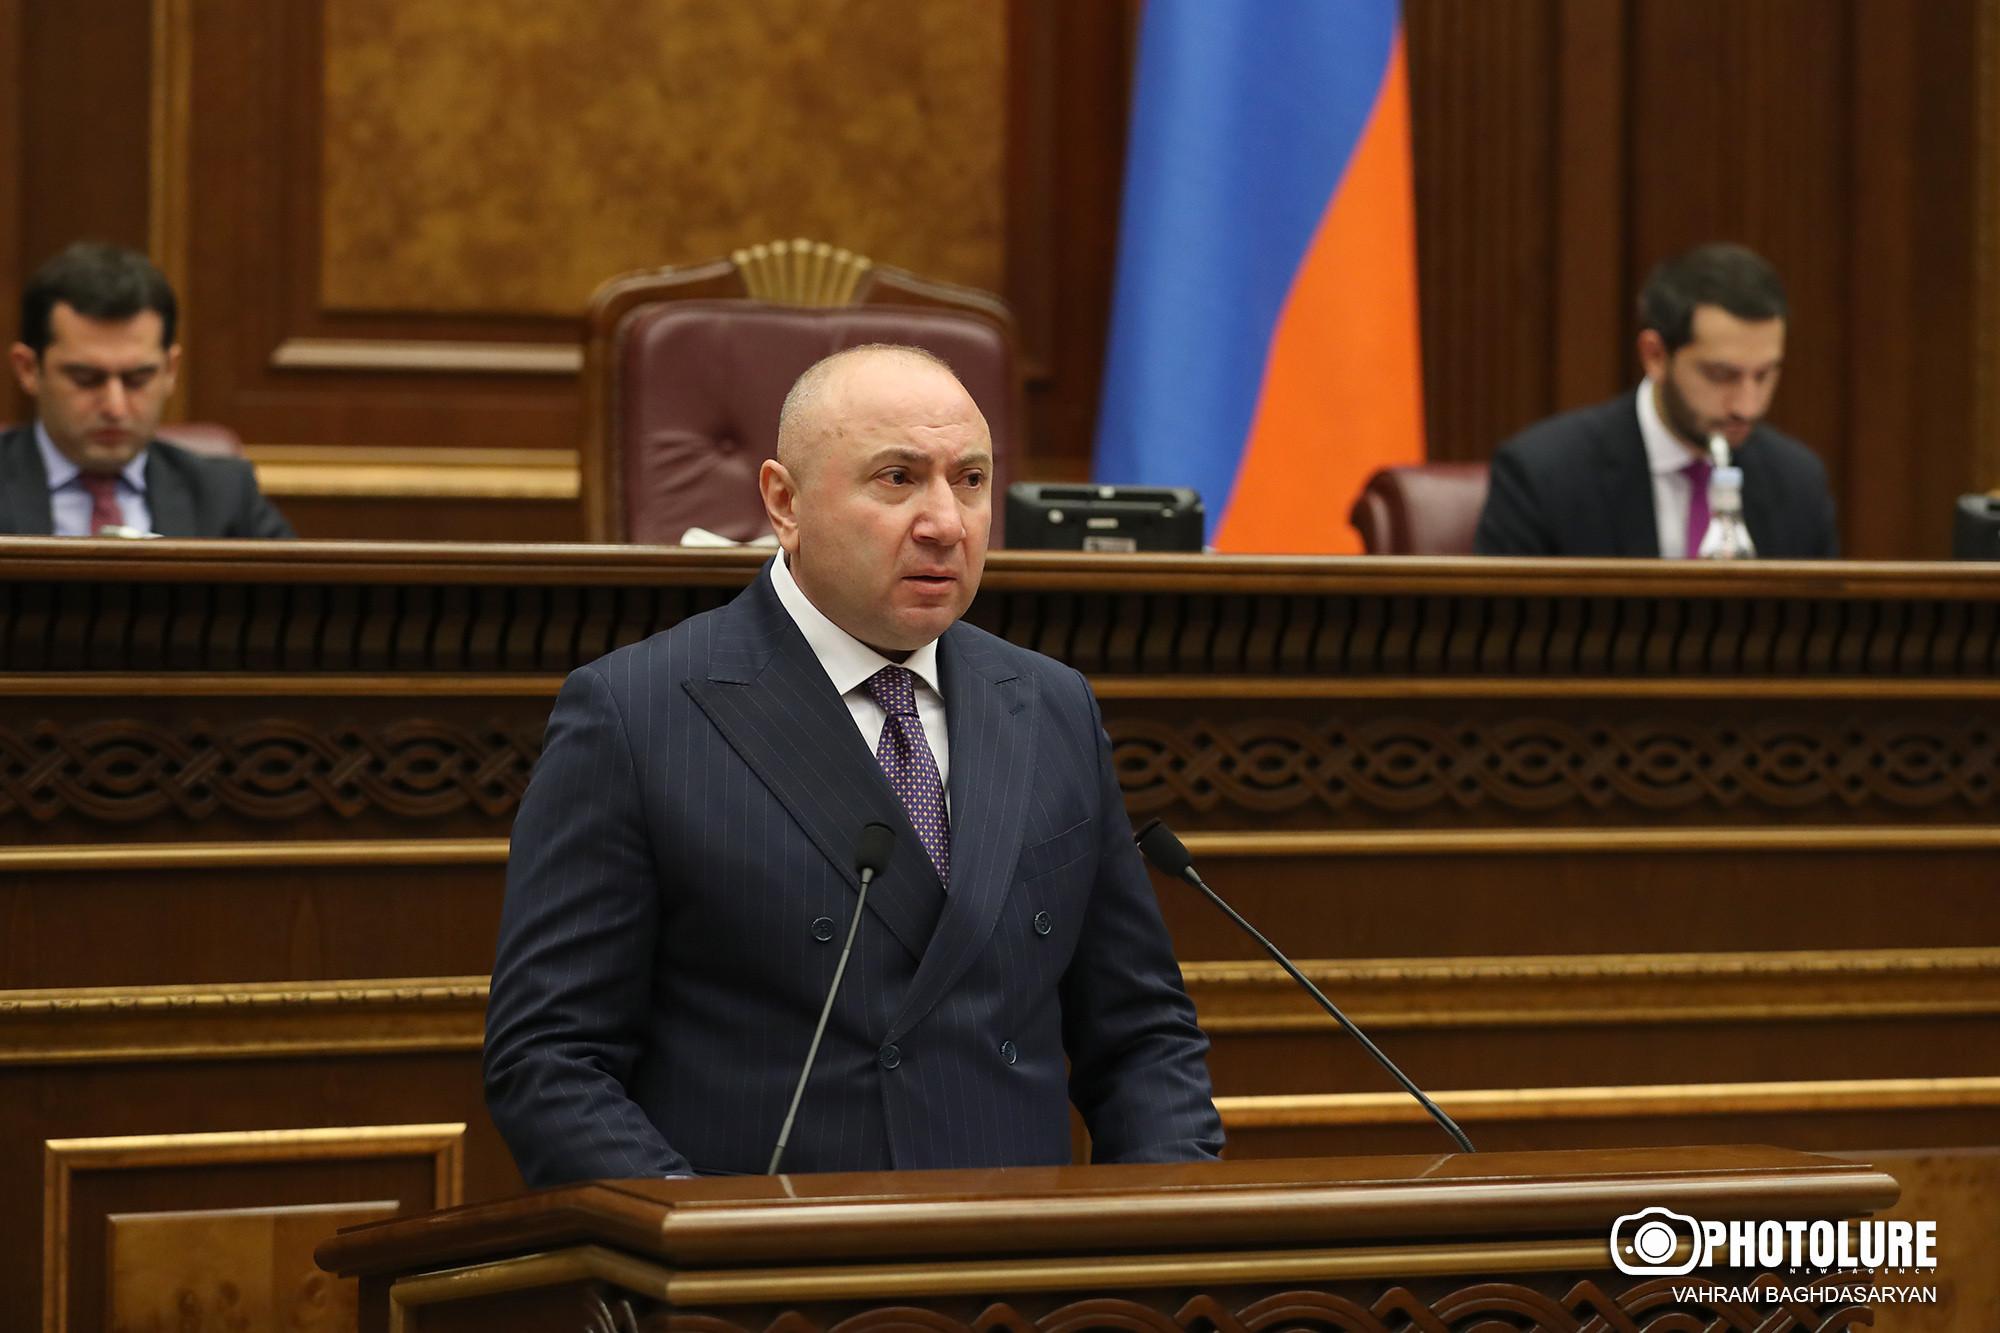 А.Теванян: “ГД” против формулировок “Нагорный Карабах” или “Республика Арцах” 